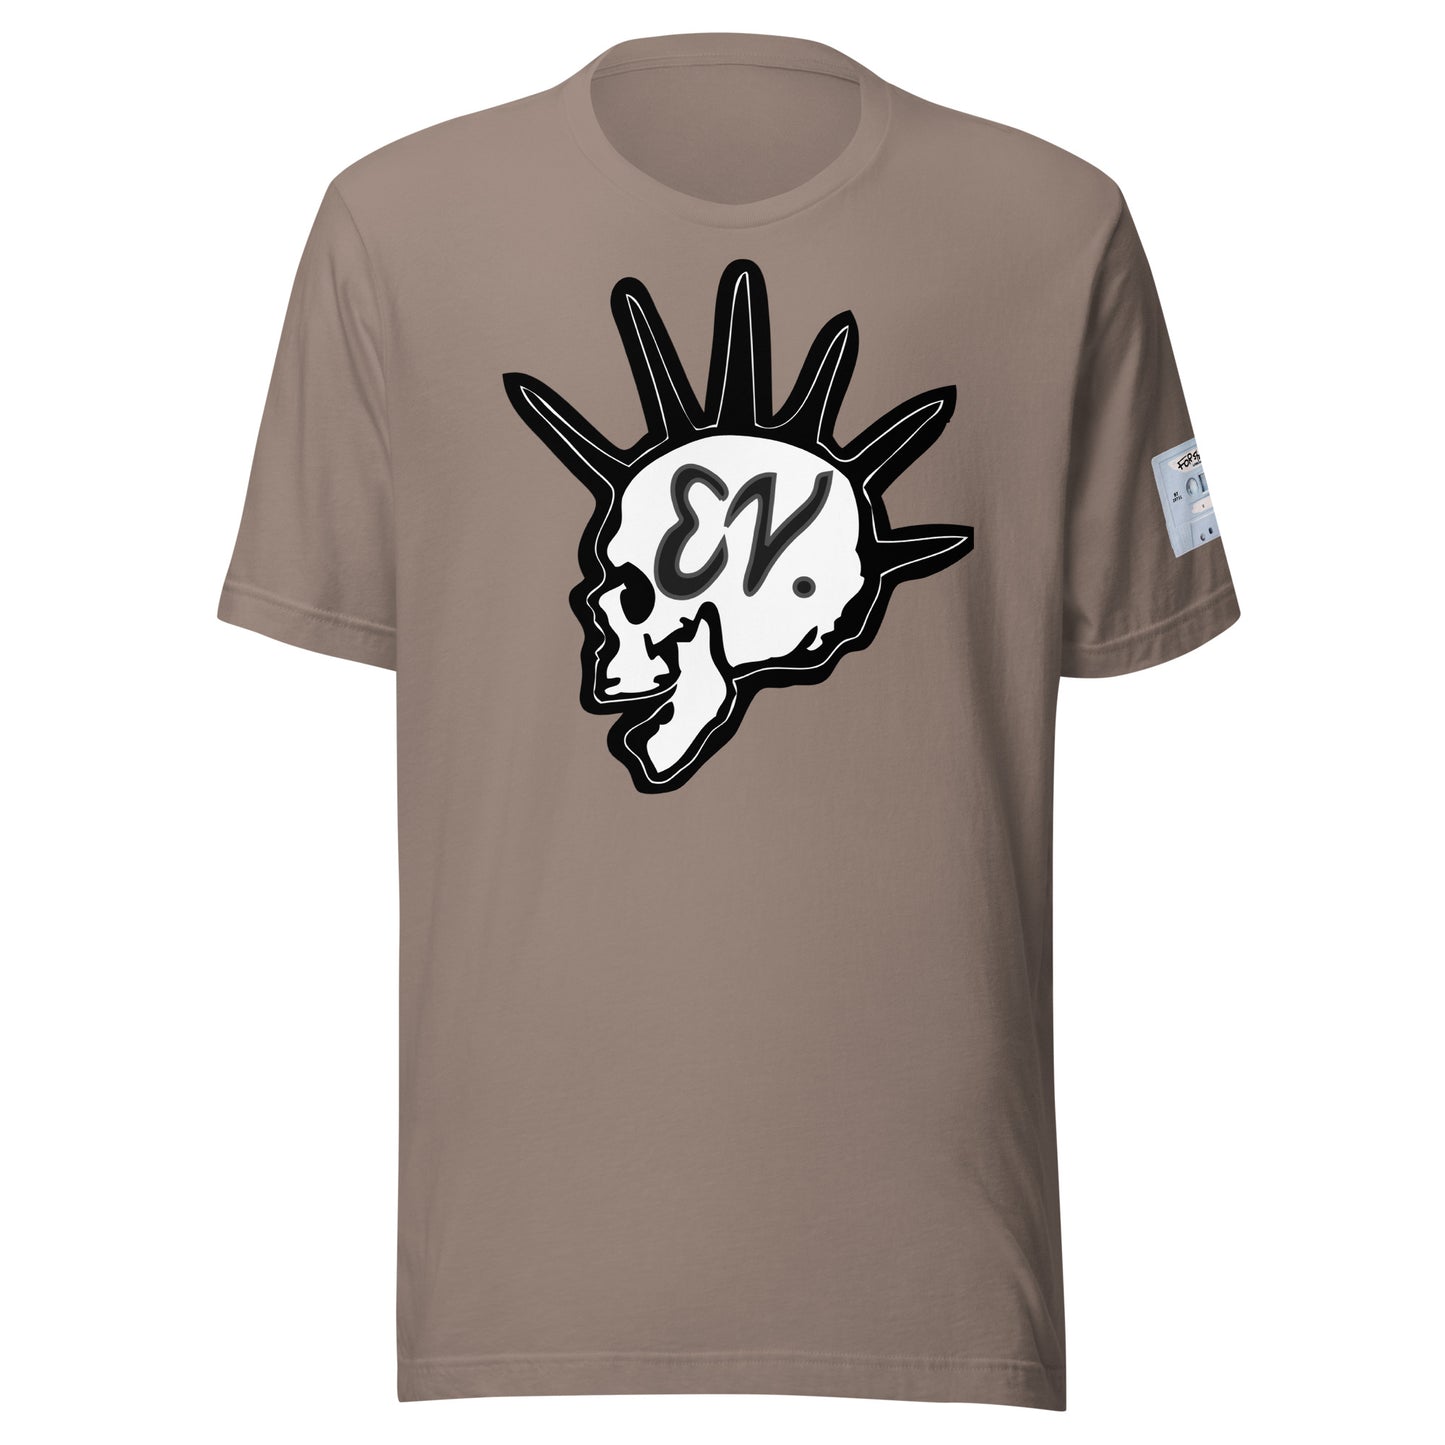 EV LOGO 2 / MOMMA SON CASSETTE - Unisex t-shirt